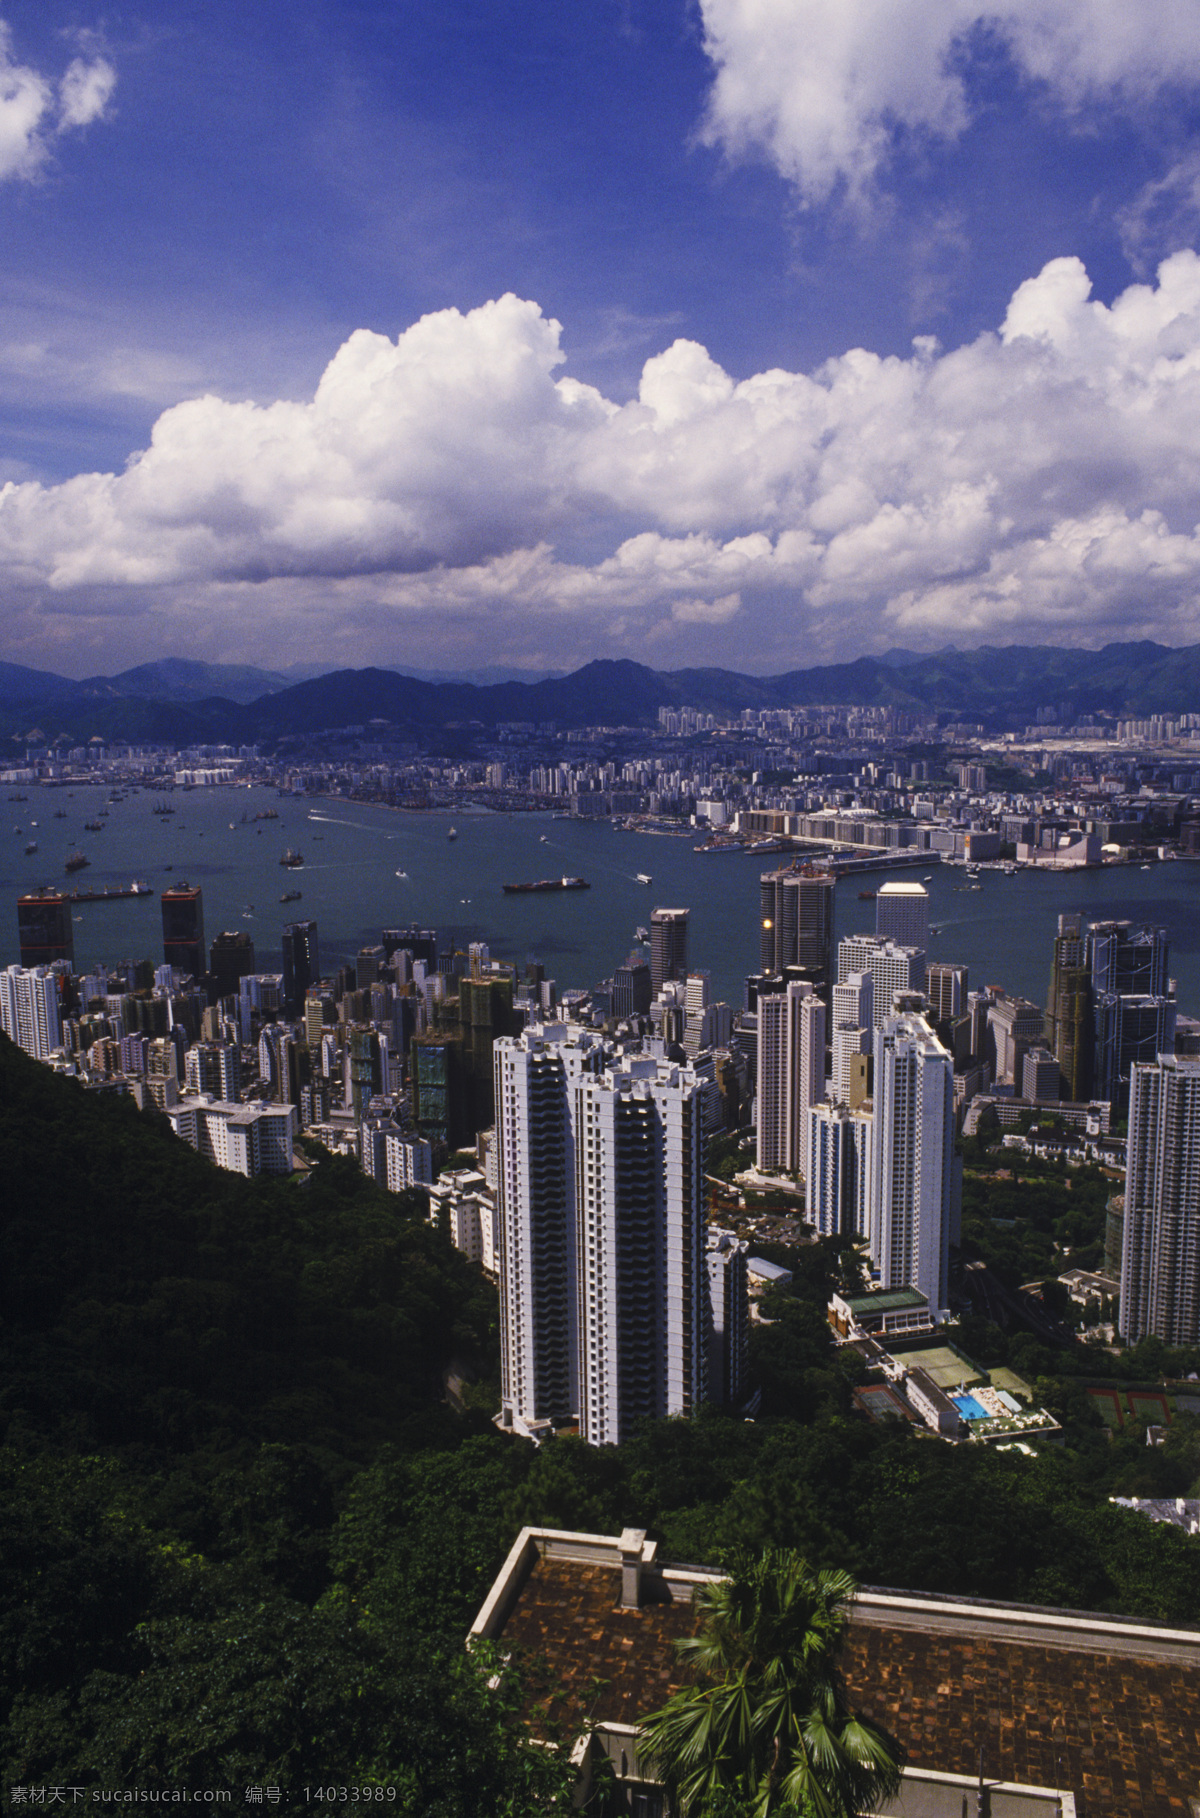 香港 城市 风光 鸟瞰 城市风光 高楼大厦 建筑 风景 繁华 繁荣 大海 海面 摄影图 高清图片 环境家居